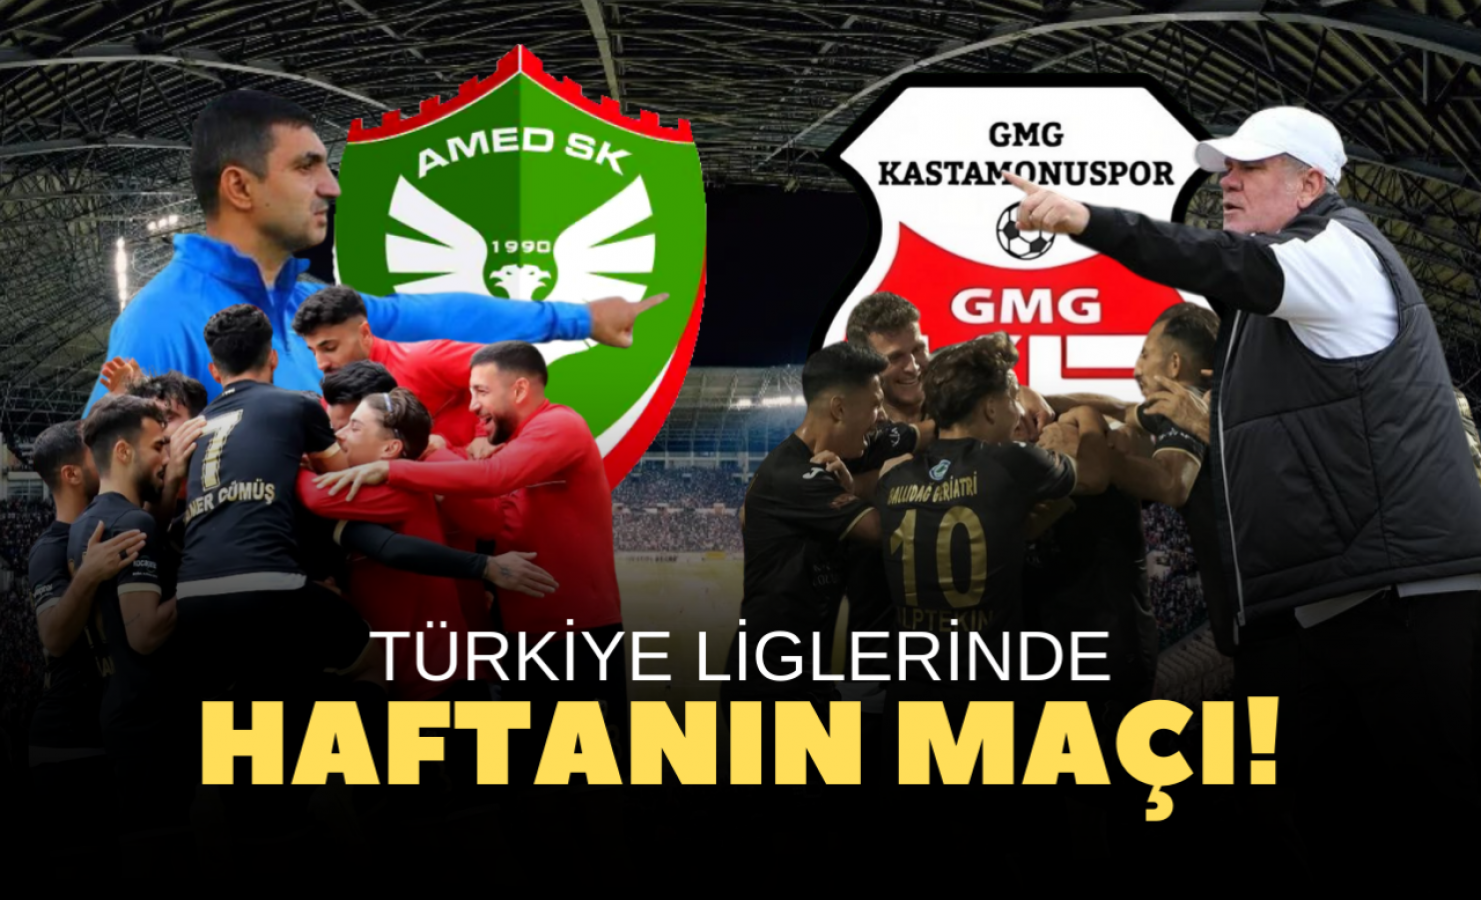 Türkiye'de haftanın maçı: Amedspor- GMG Kastamonuspor